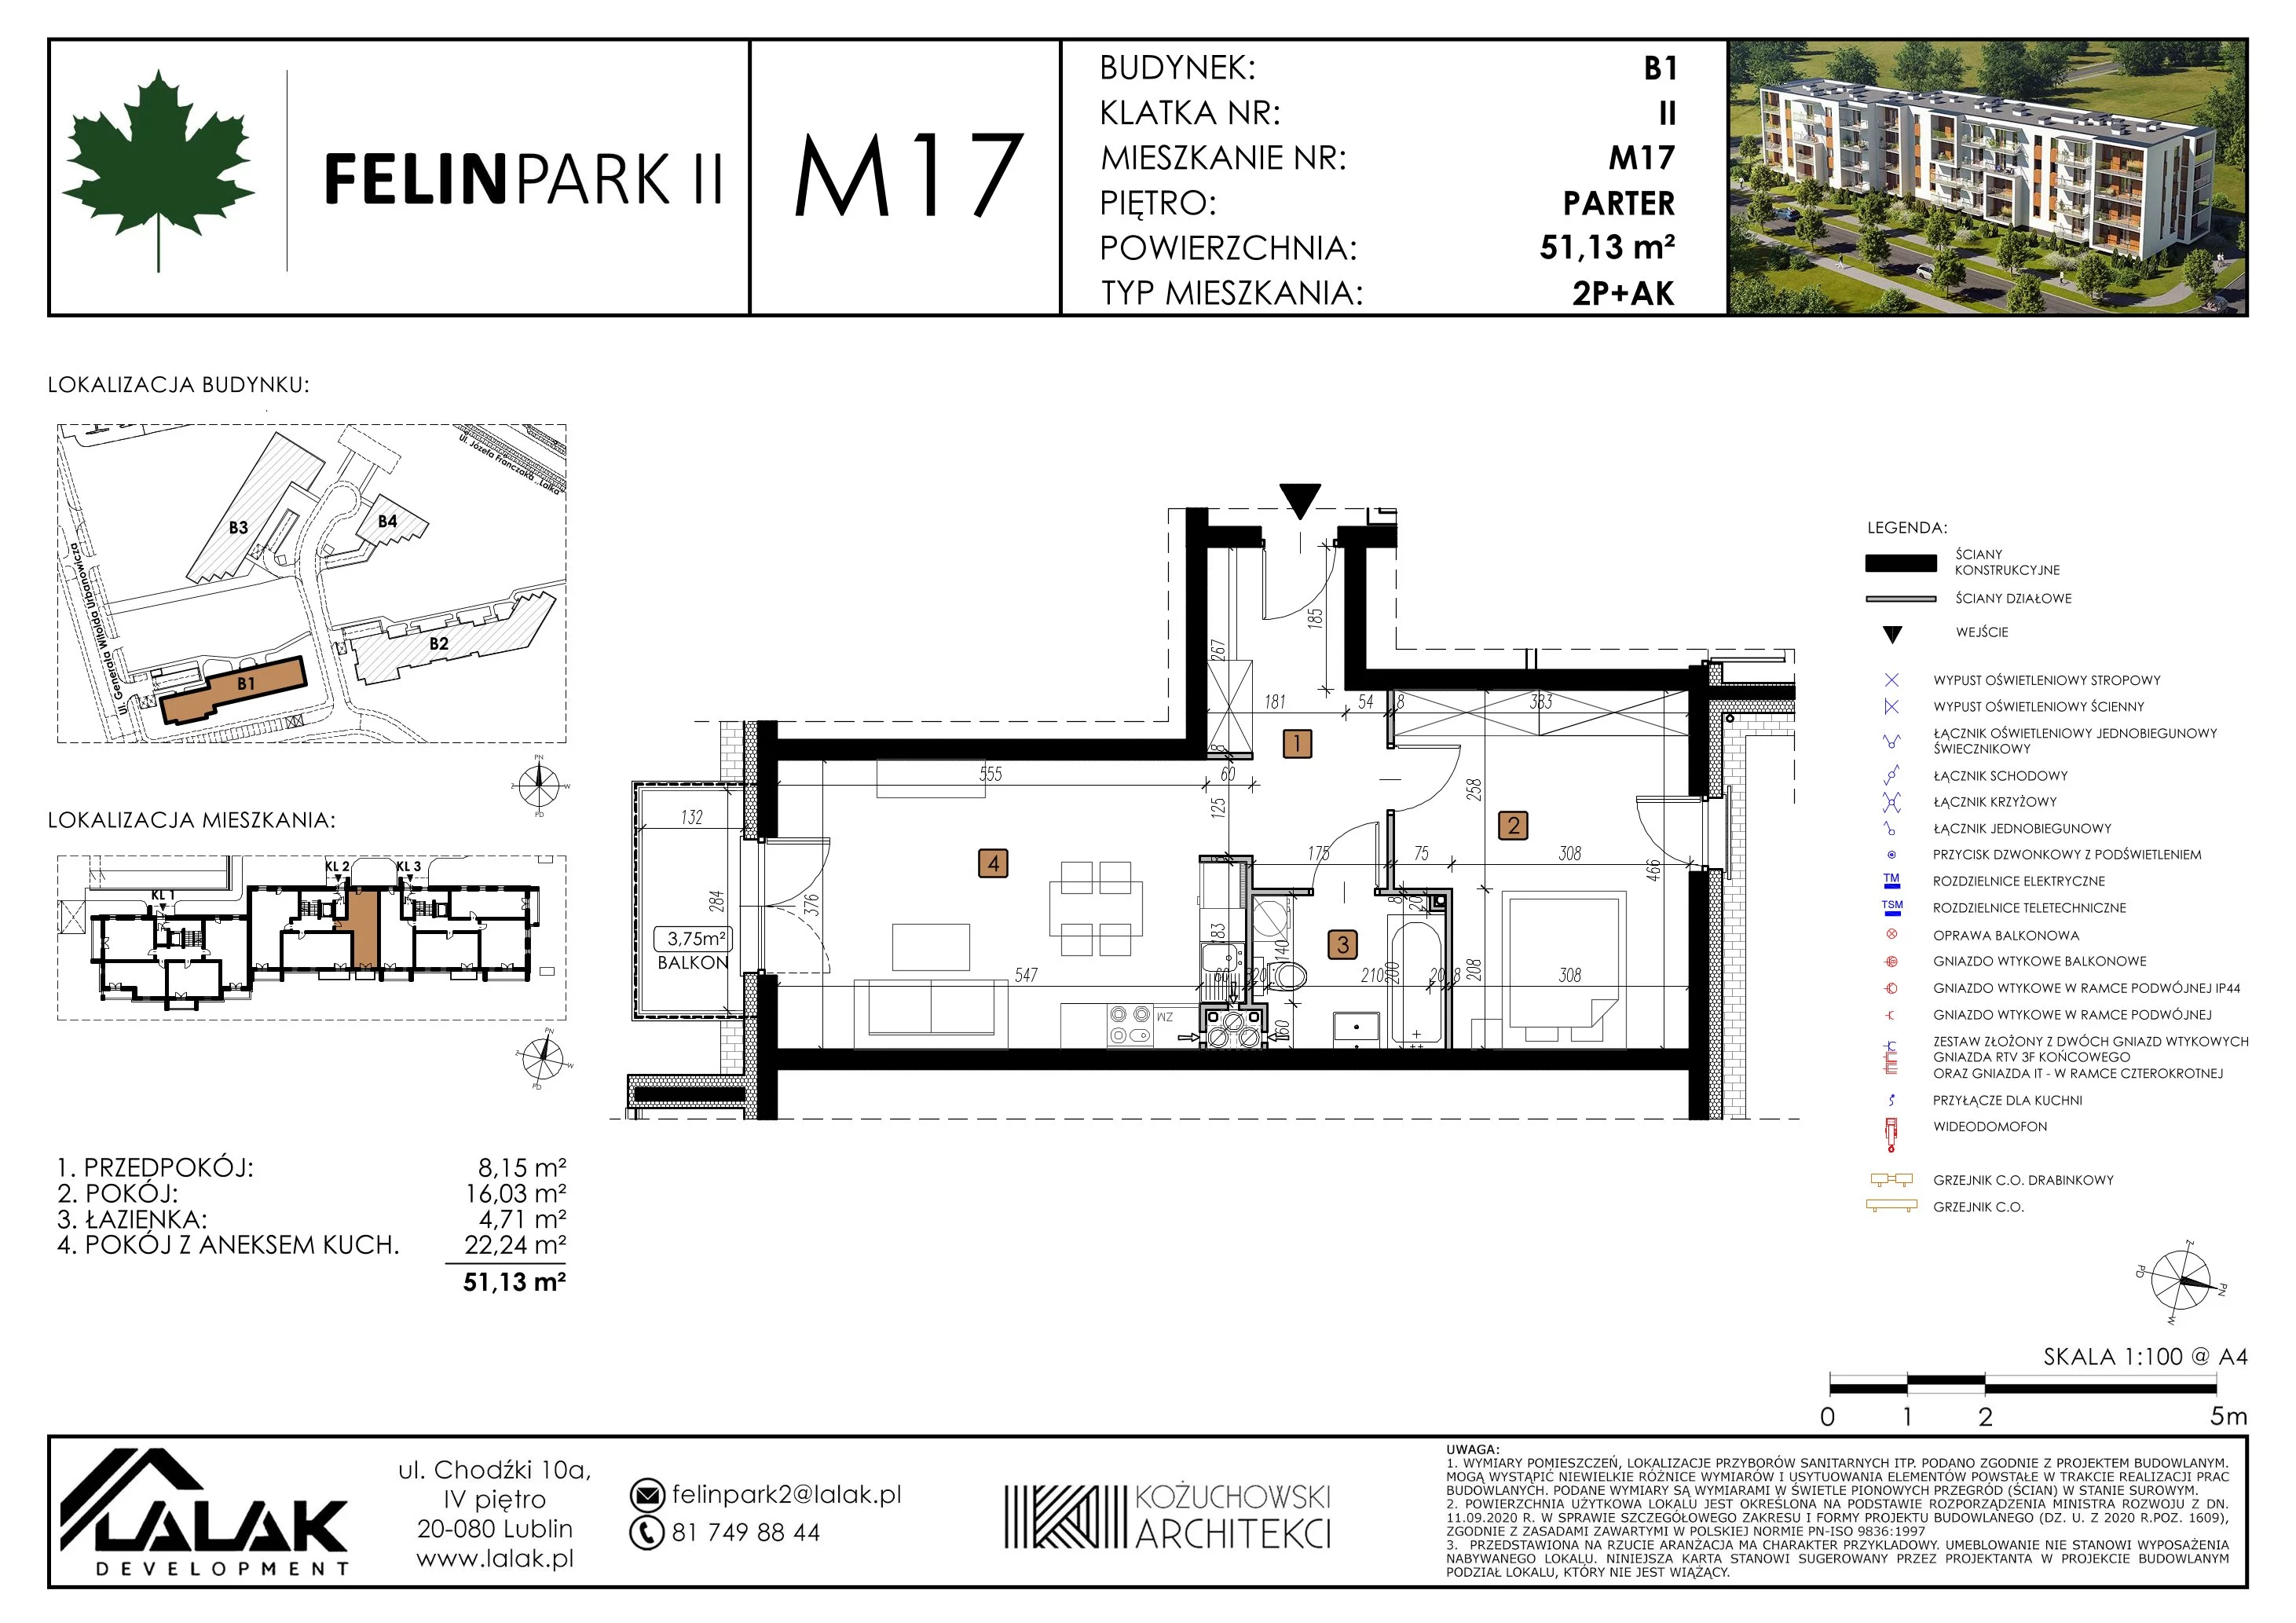 Mieszkanie 51,13 m², parter, oferta nr B1_M17/P, Felin Park II, Lublin, Felin, ul. gen. Stanisława Skalskiego 8-10